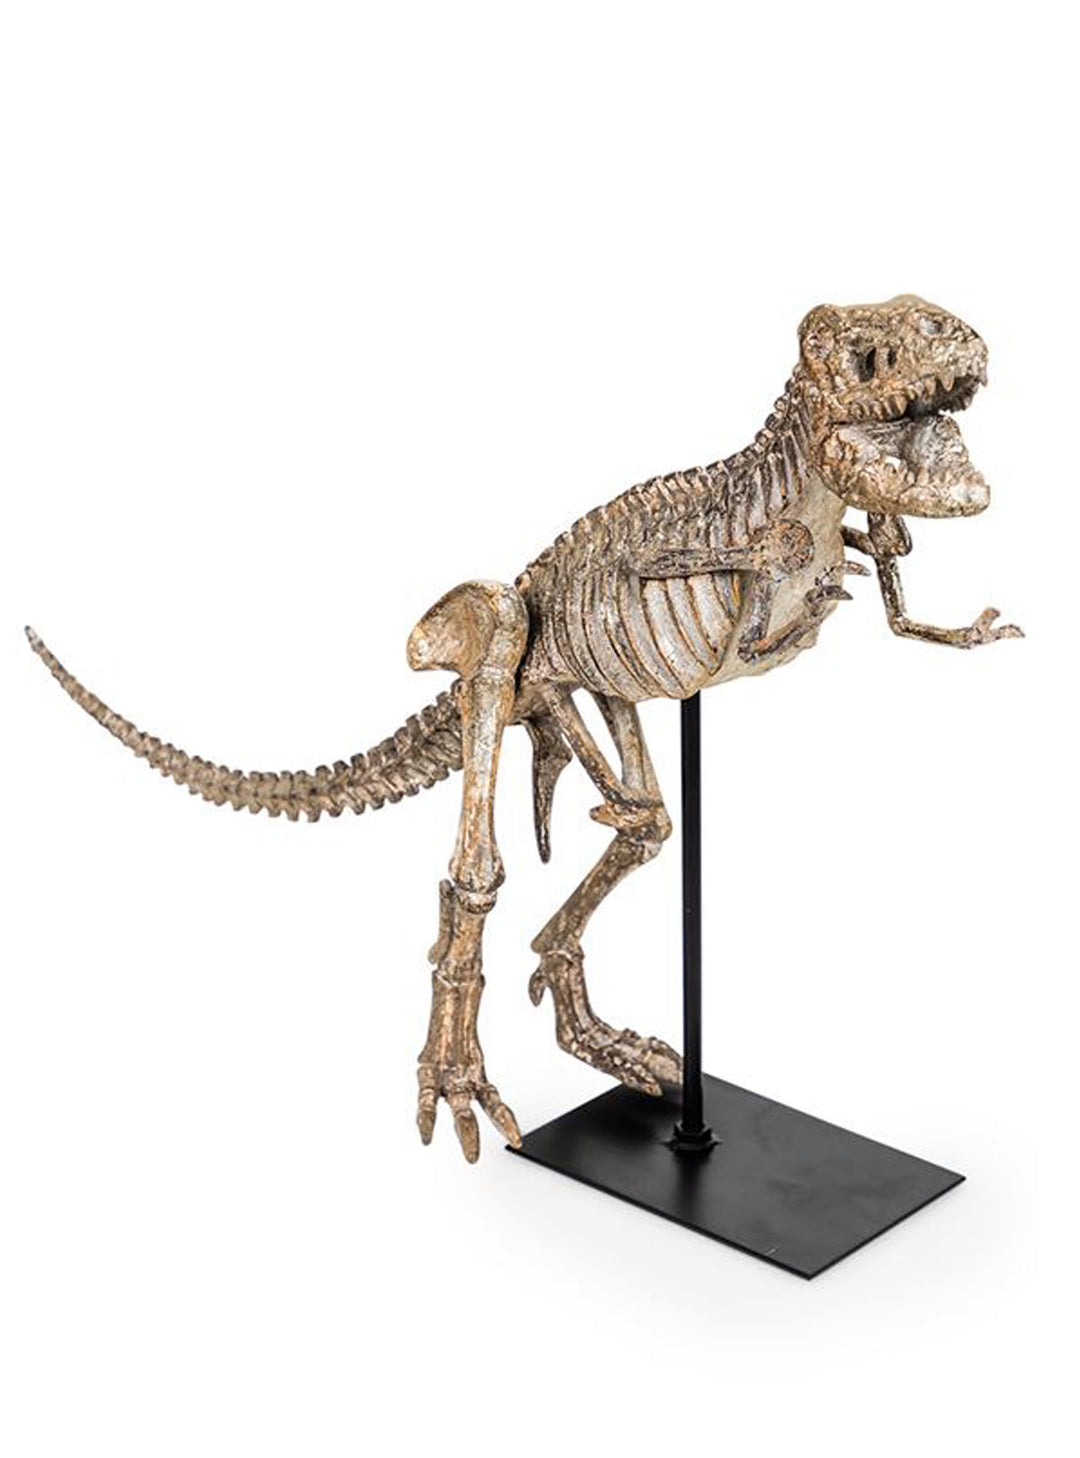 Large Dinosaur Figure, Tyrannosaurus Skeleton on Stand